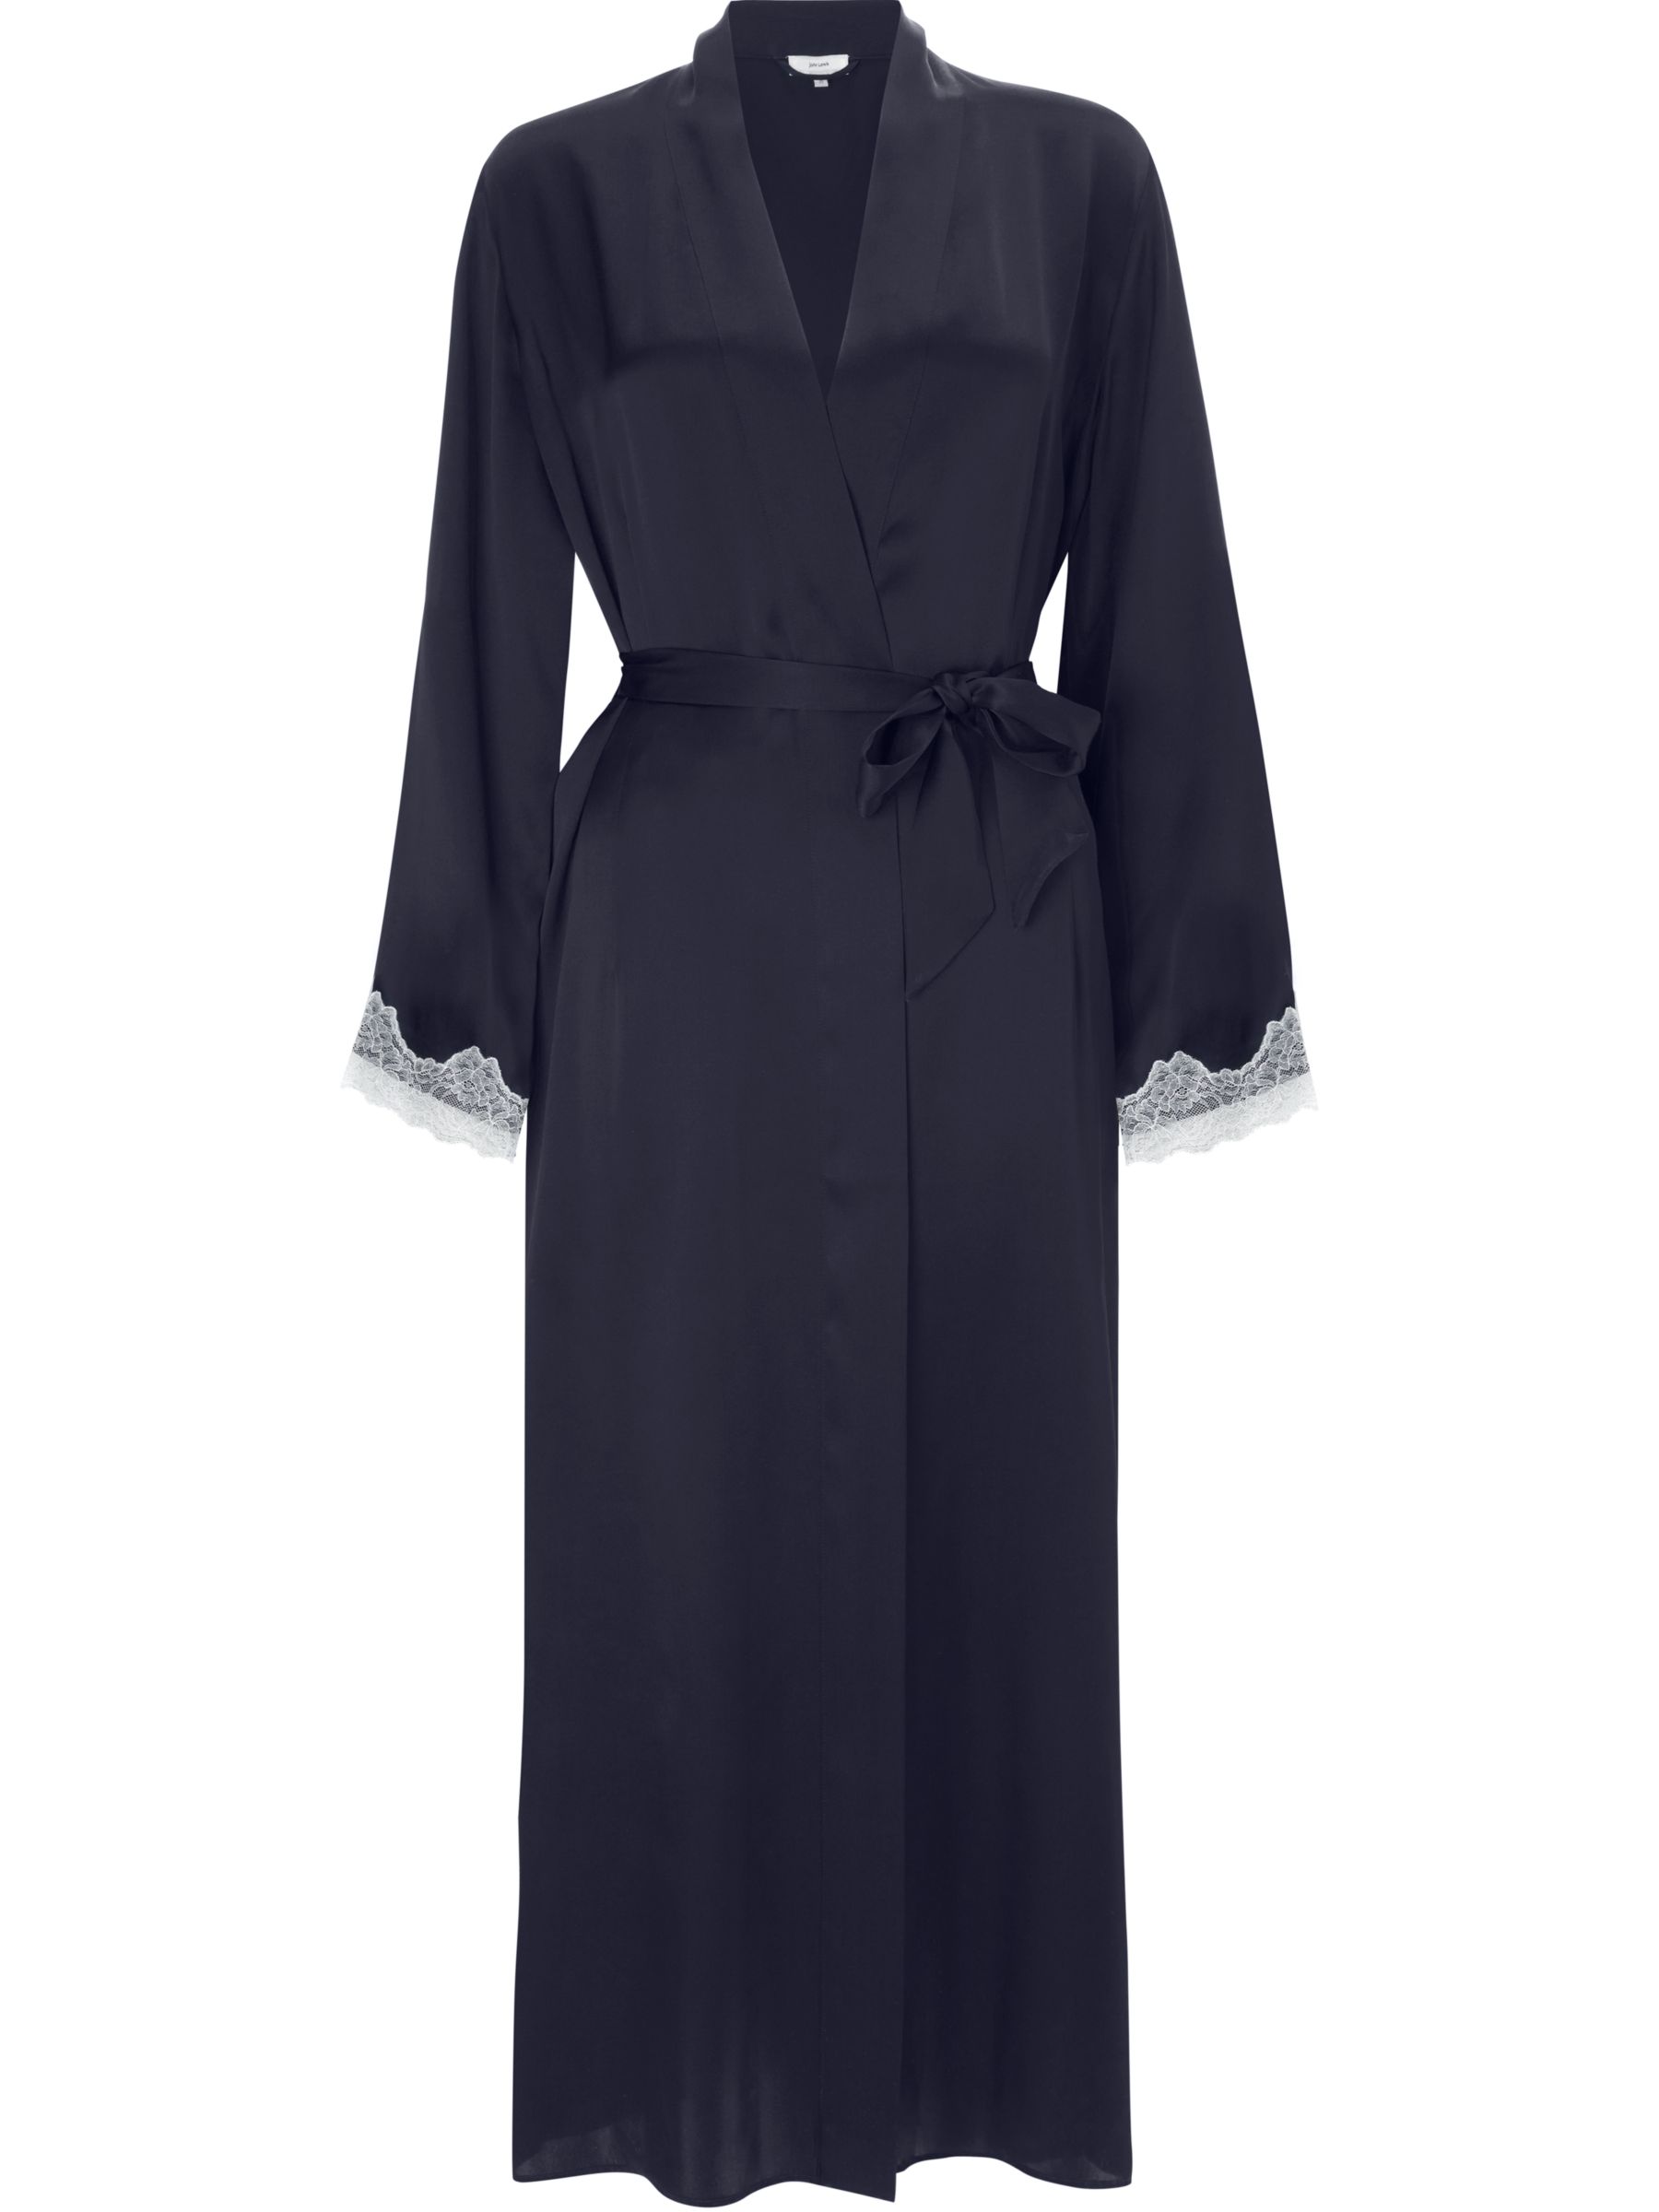 John Lewis Silk Lace Trim Long Dressing Gown, Navy/Ivory at John Lewis ...